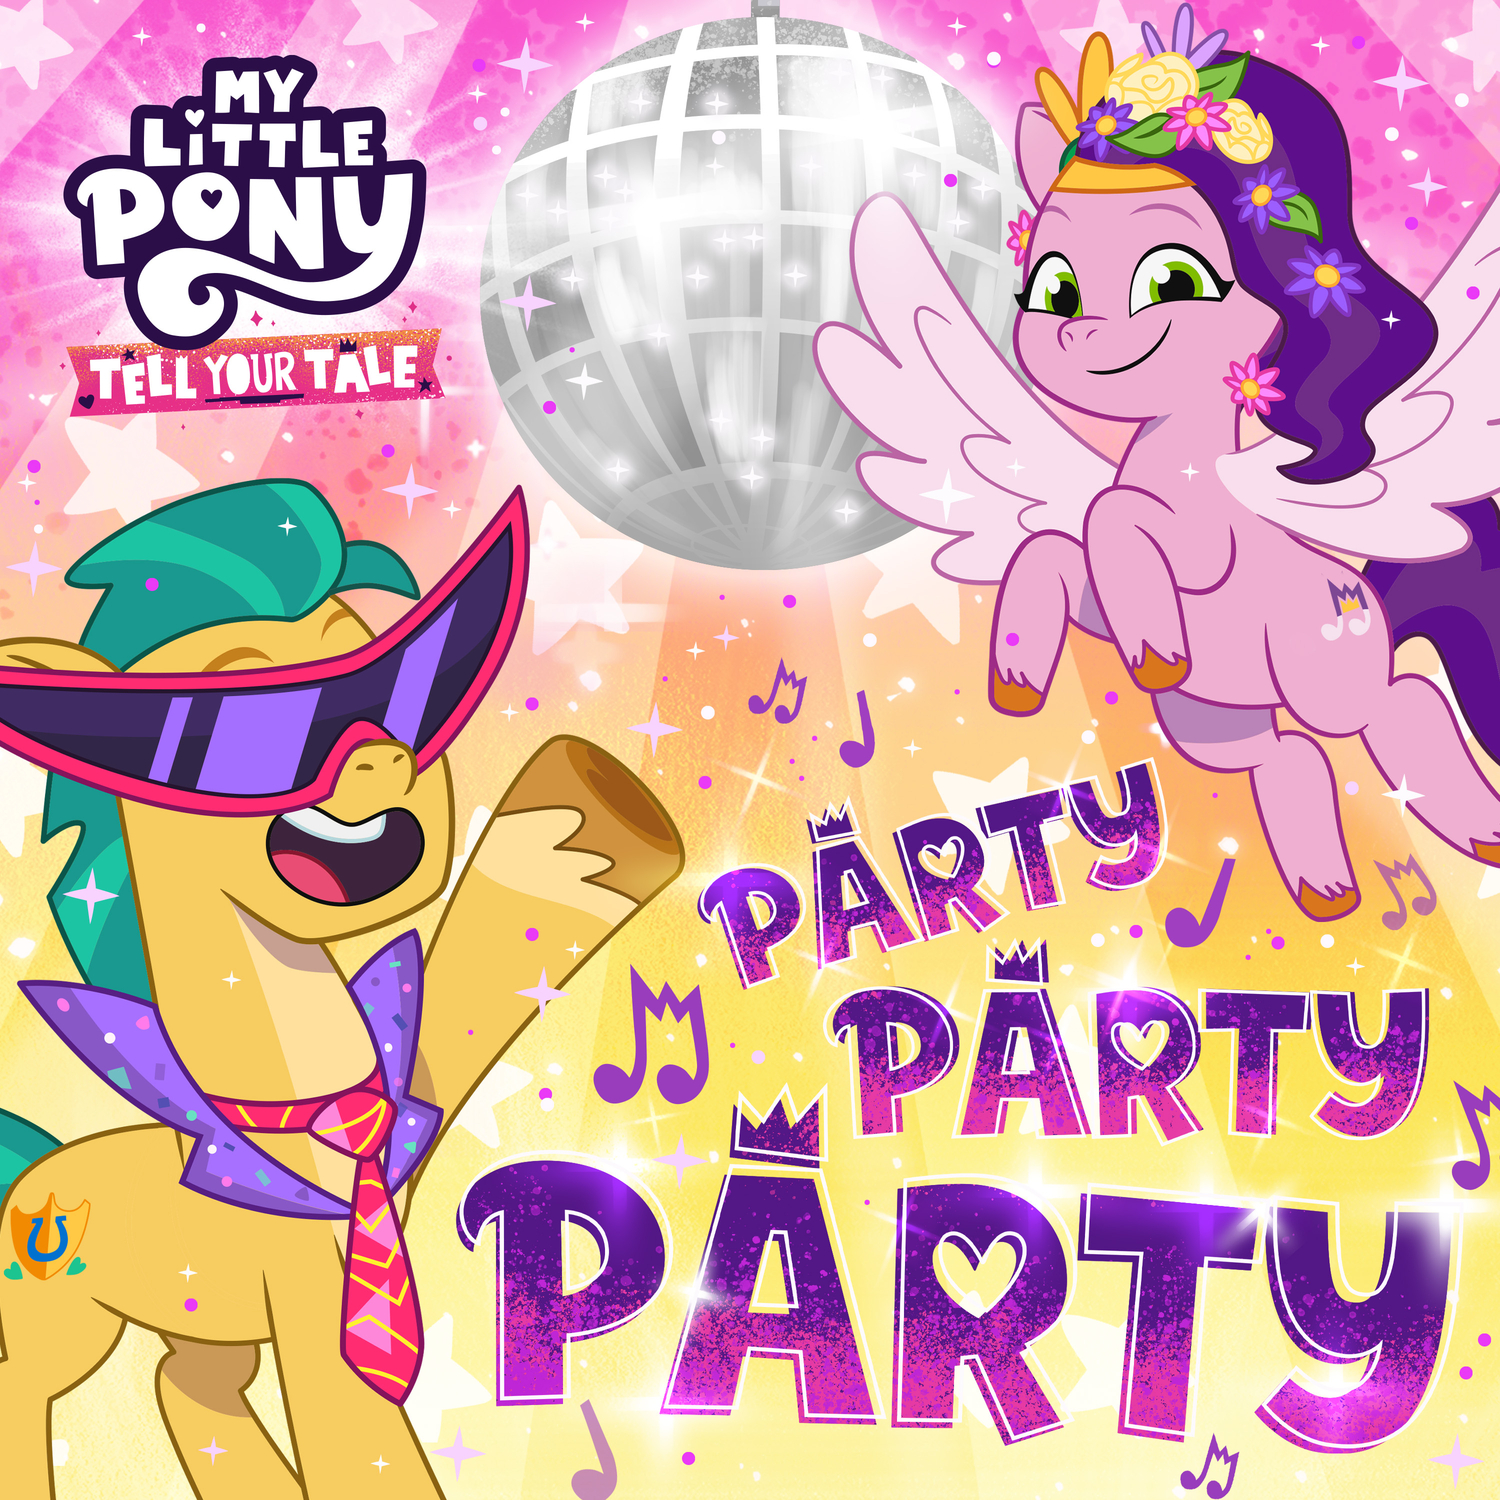 Stiahnuť ▼ Party Party Party